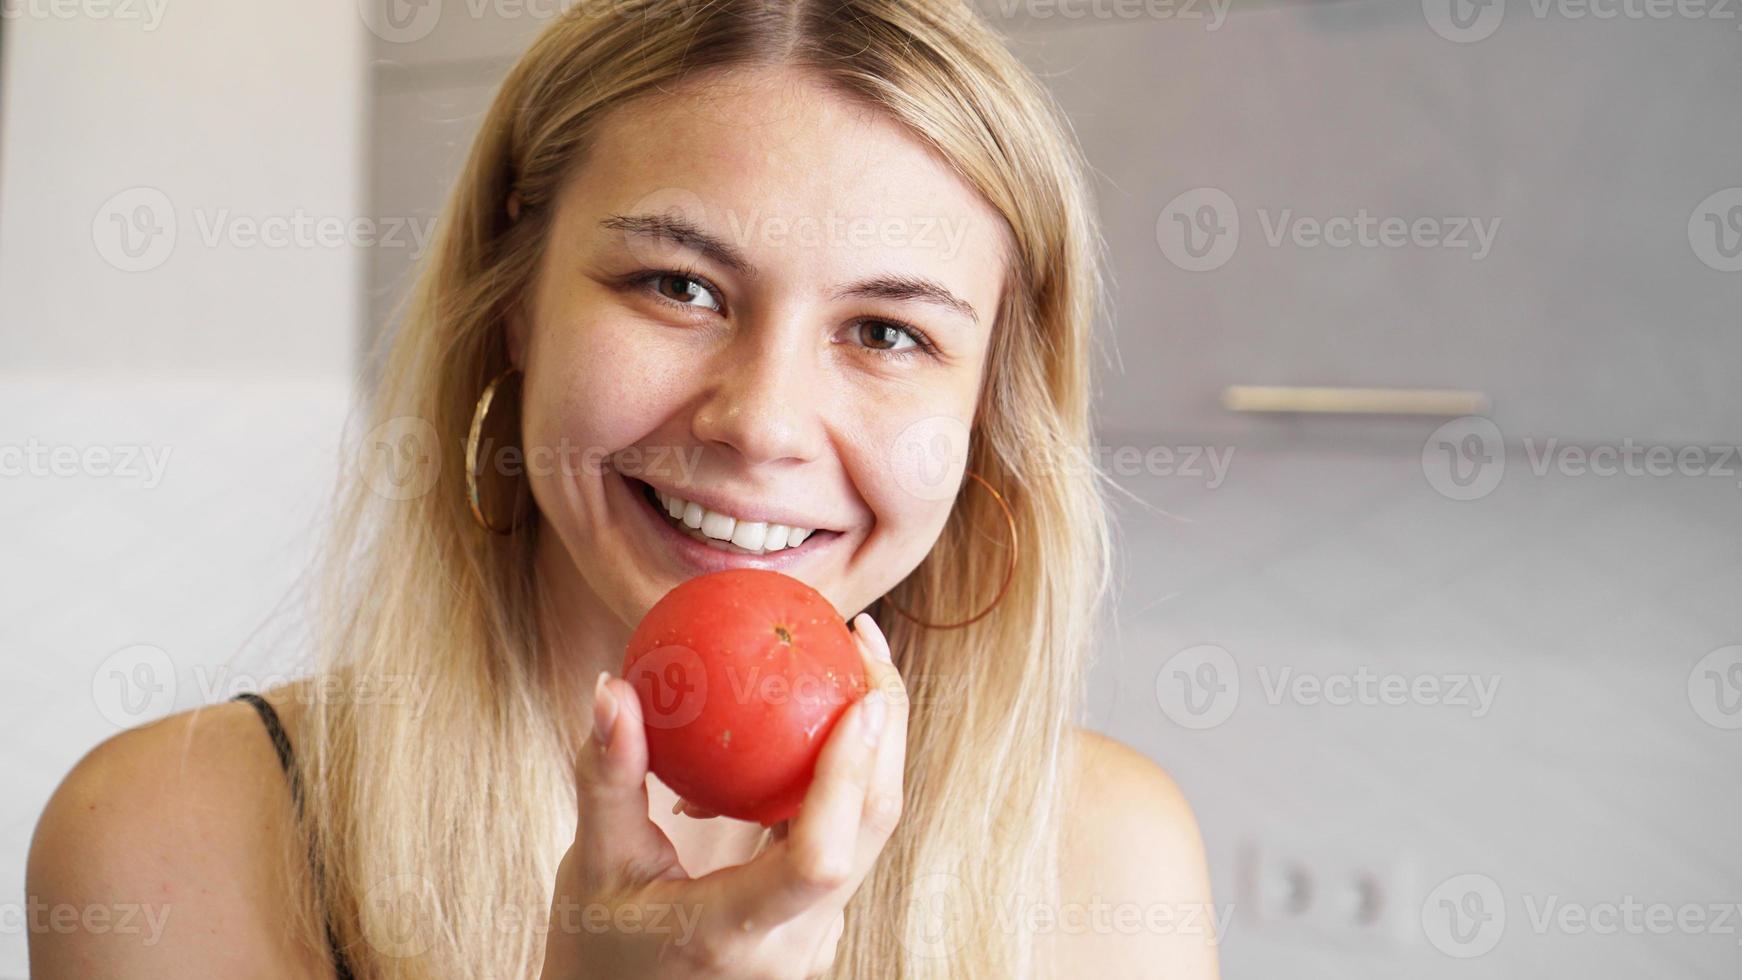 jonge gelukkige vrouw die tomaat vasthoudt en glimlacht foto